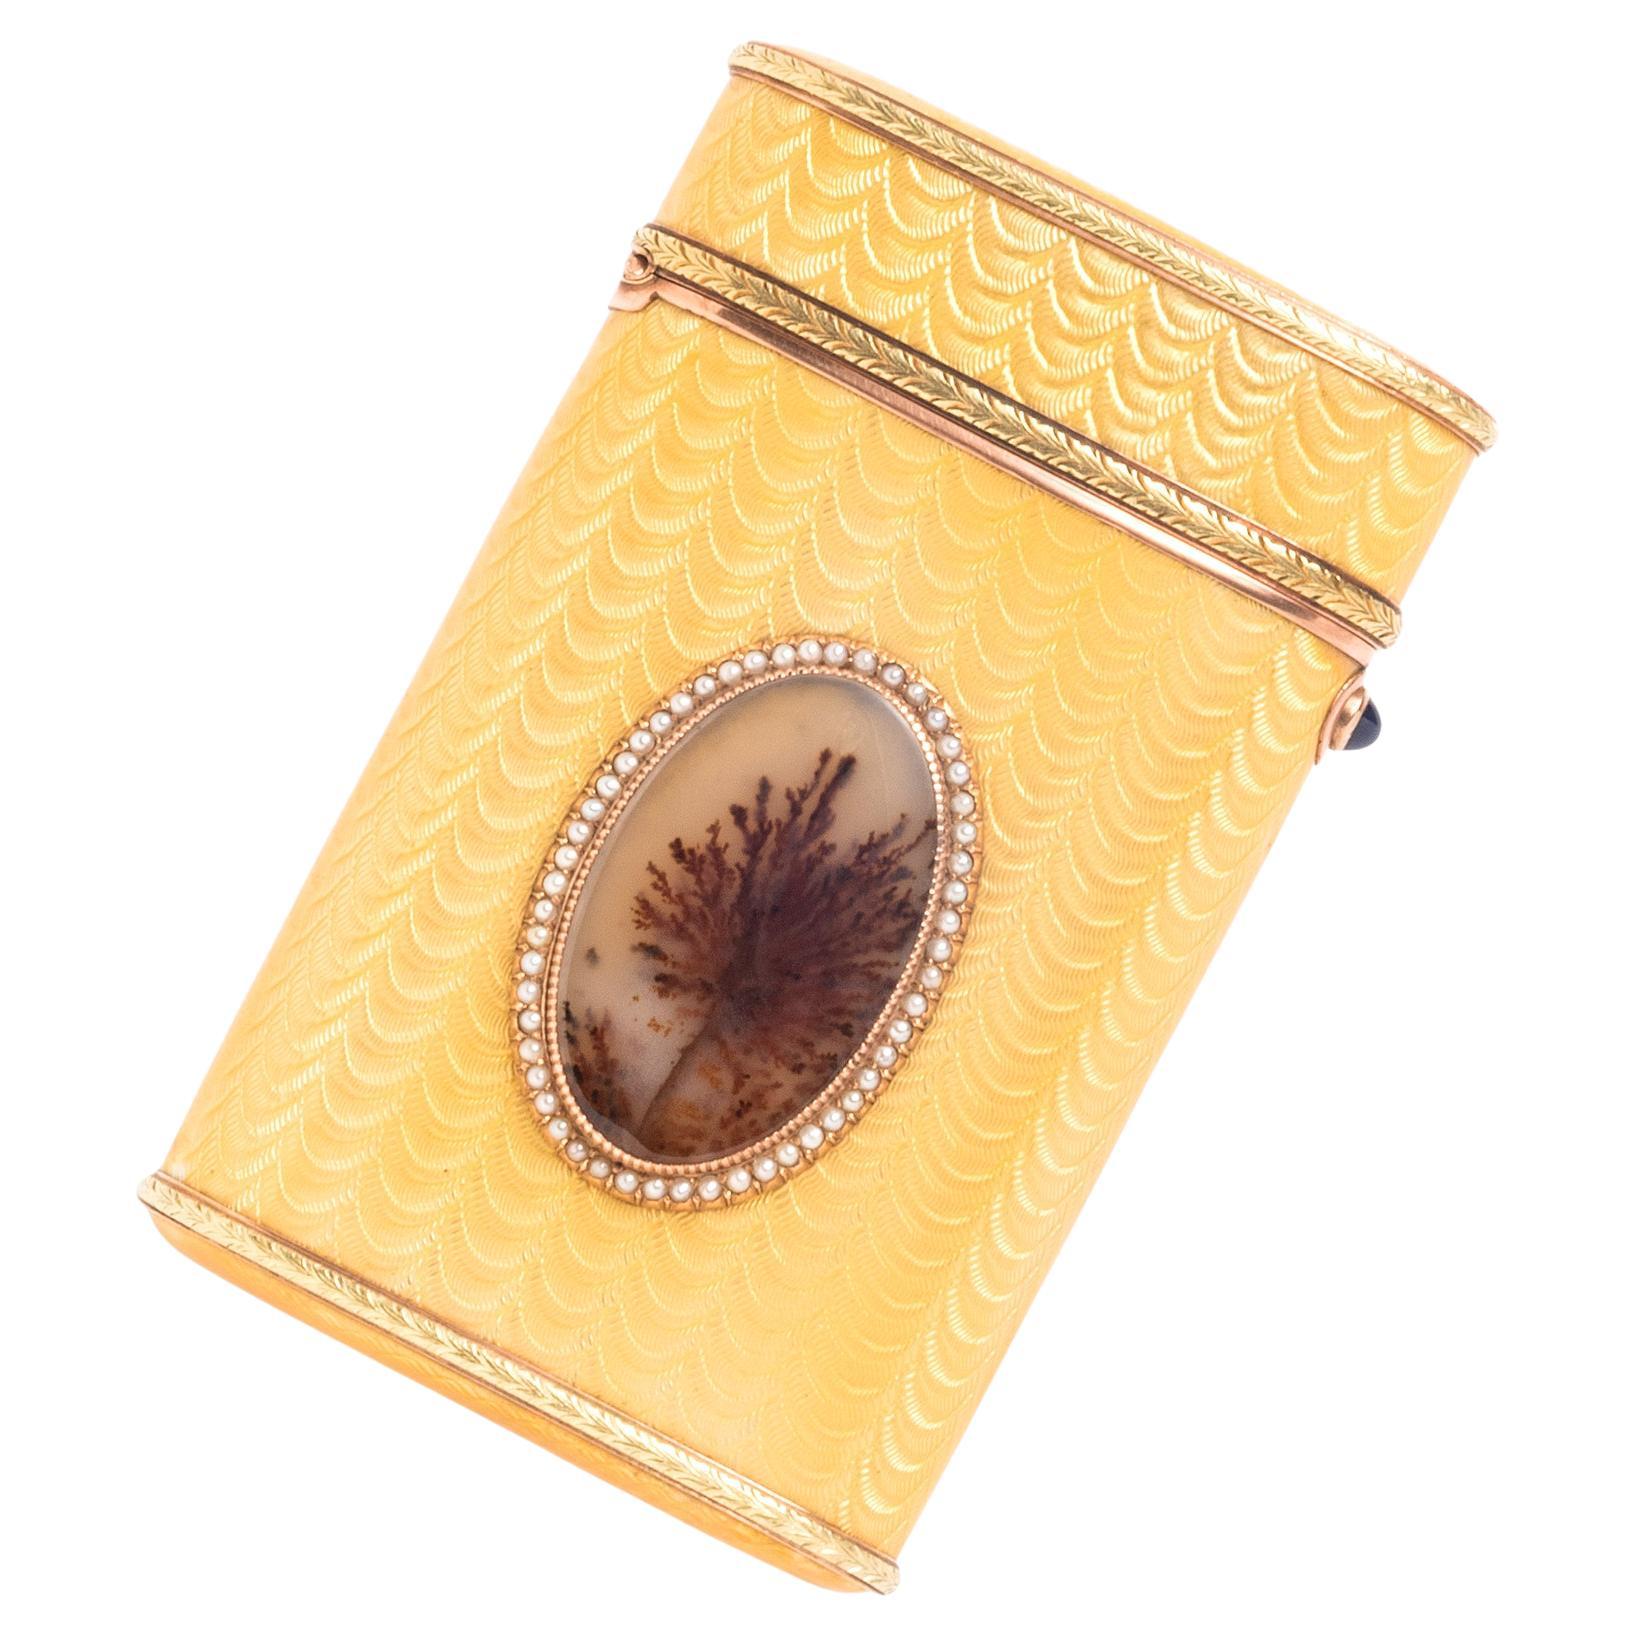 Cet étui à cigarettes bicolore en or et émail de Fabergé présente un décor ovale en agate mousse appliqué dans une bordure de perles de rocaille et d'or. Le corps est décoré d'émail jaune guilloché et de bandes de laurier appliquées à la base et au